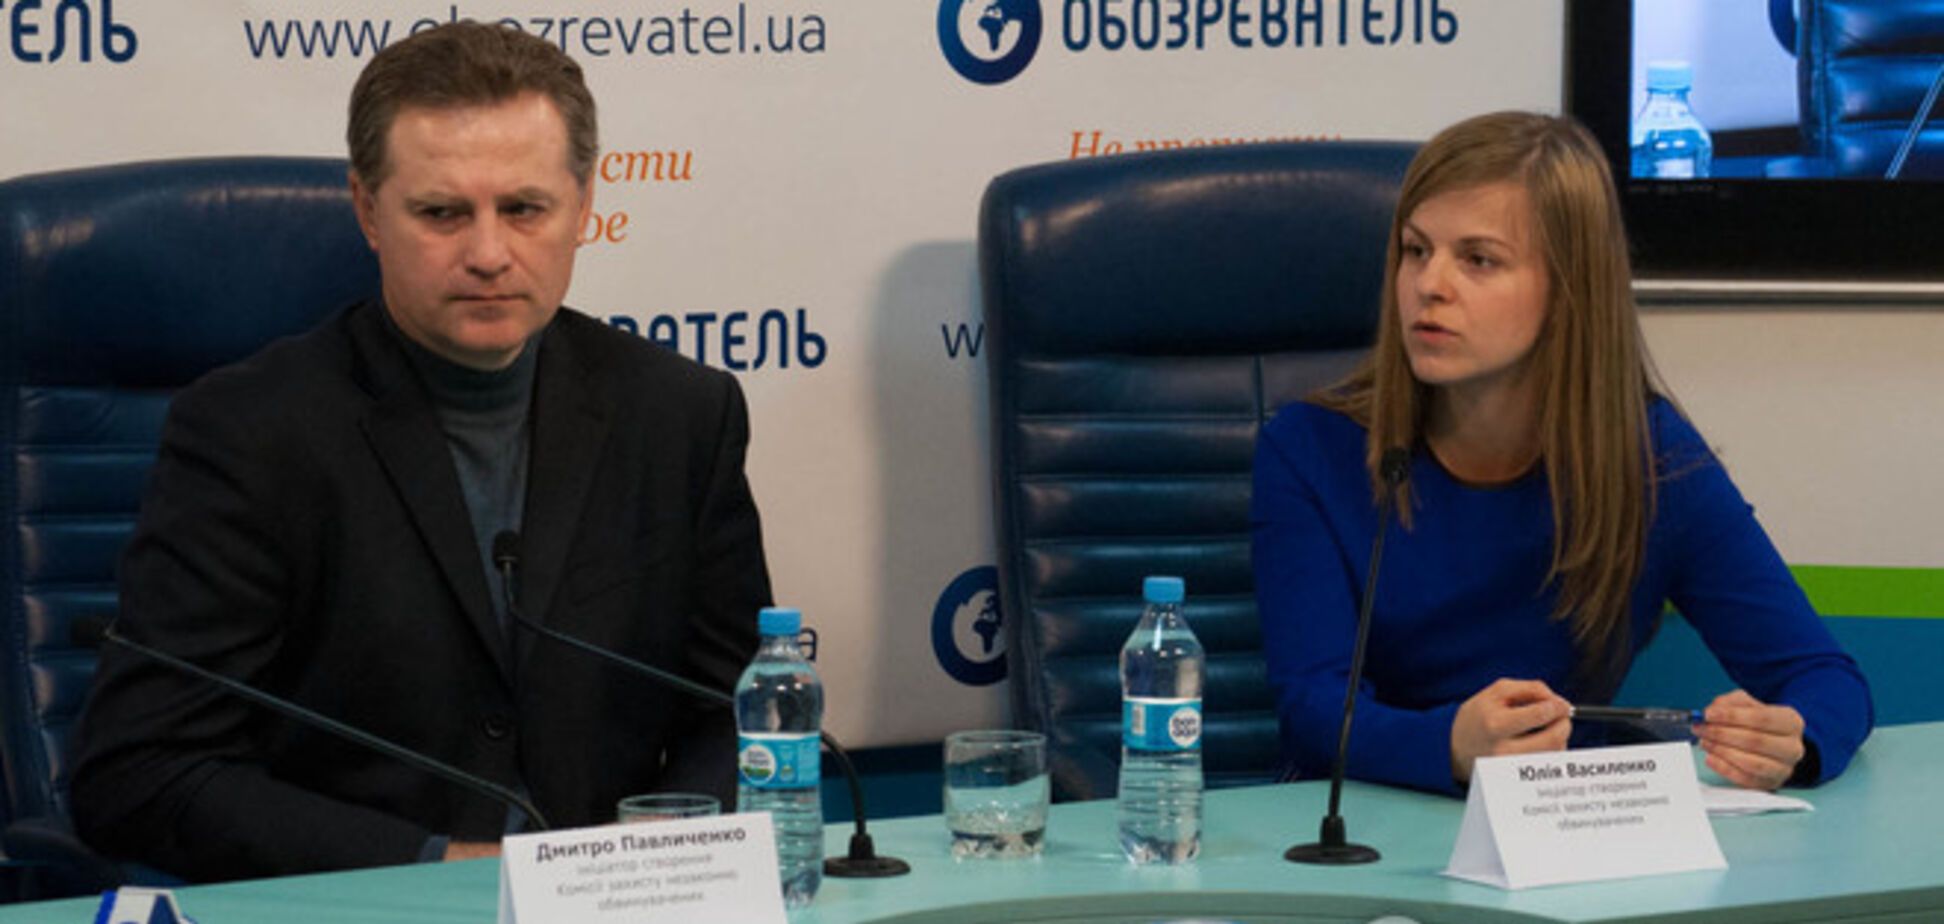 Павличенко намерен защищать права незаконно обвиненных